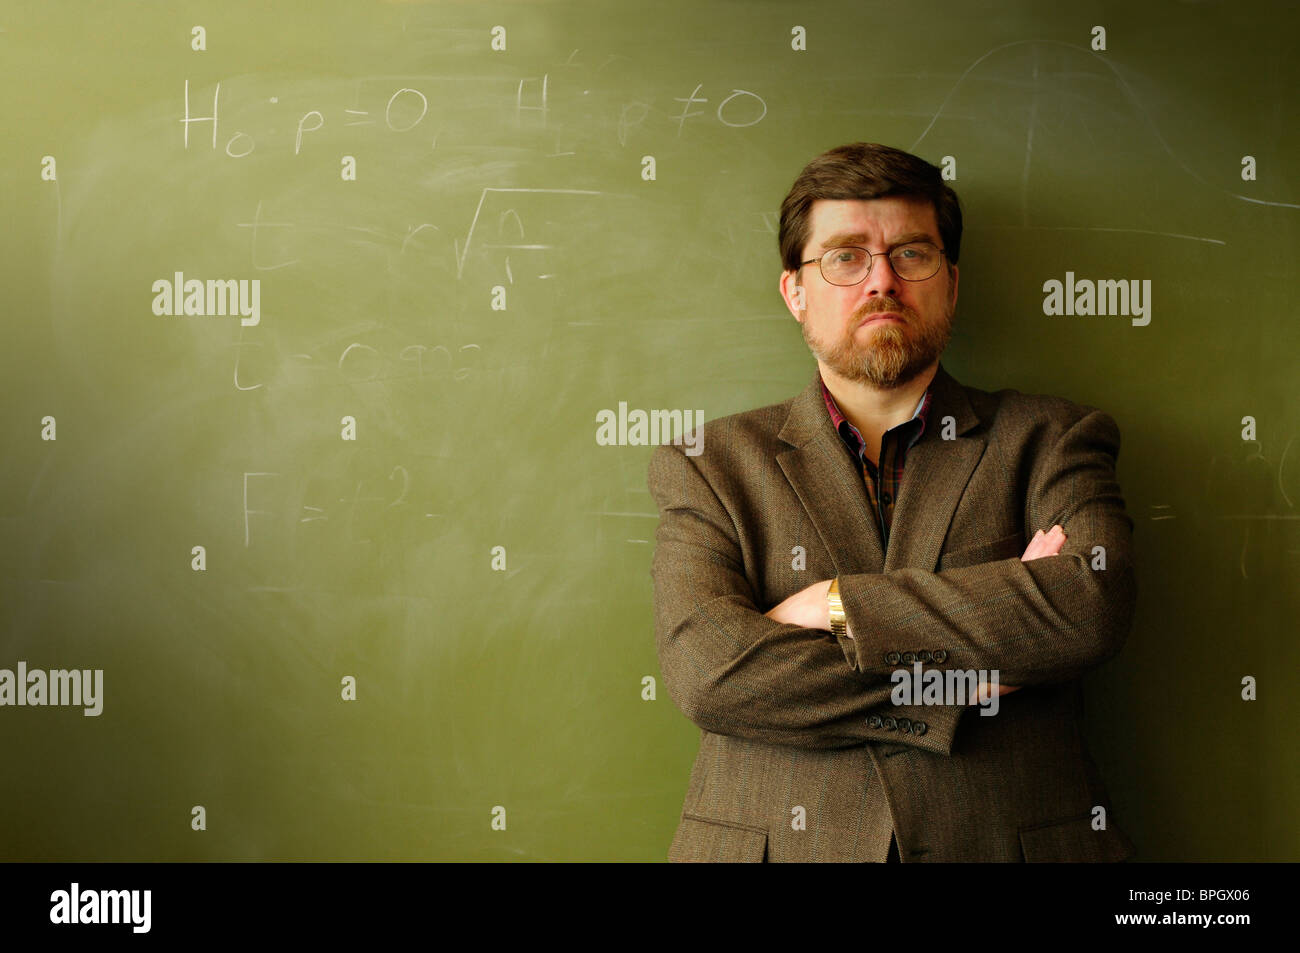 Professore di matematica o un insegnante in piedi di fronte a una lavagna Verde, possibilmente infastiditi o determinato. Foto Stock